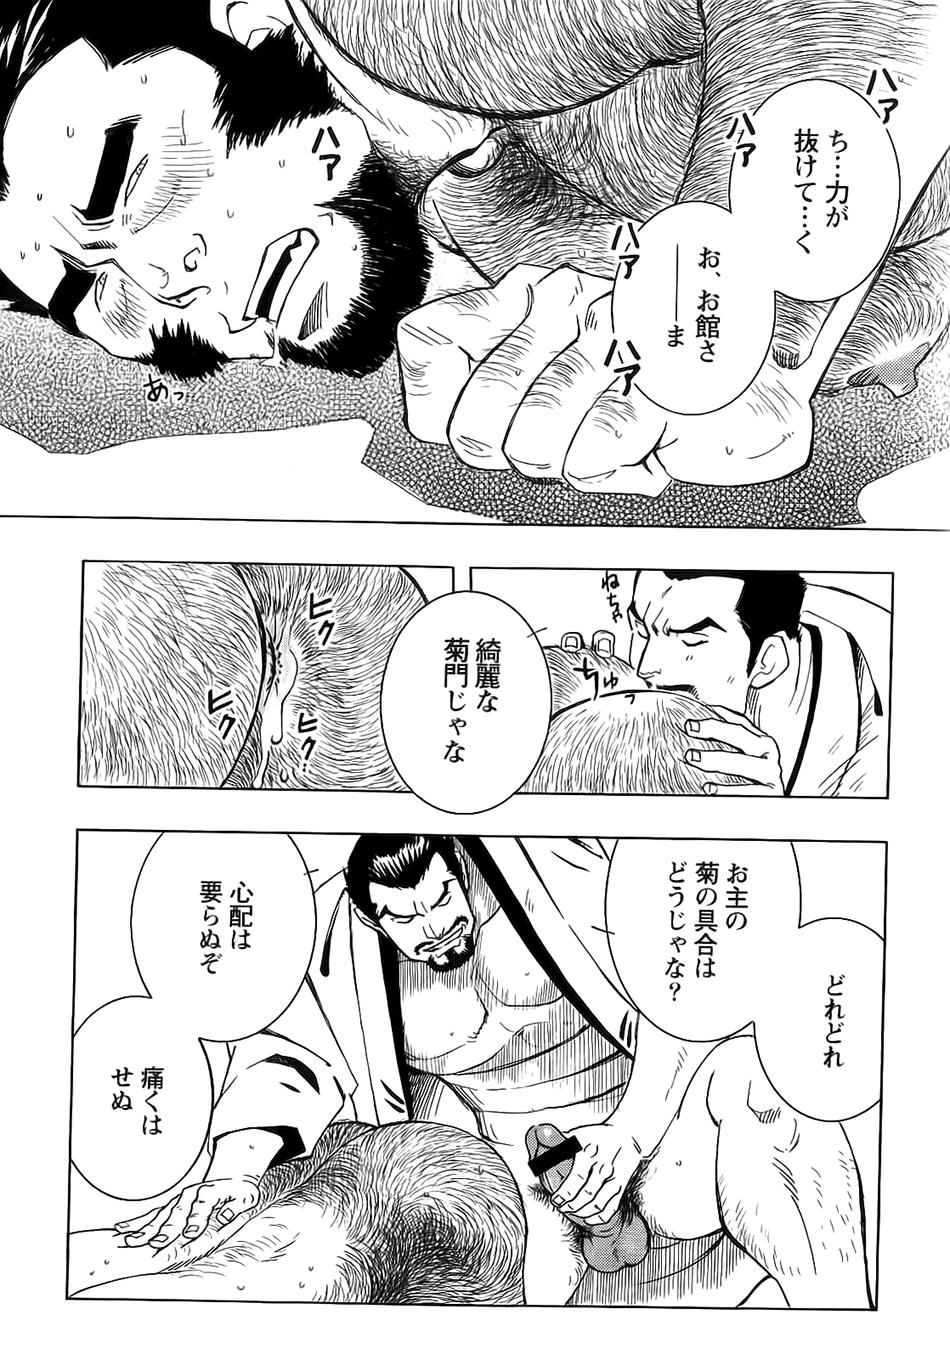 Nobunaga's lotion man 15